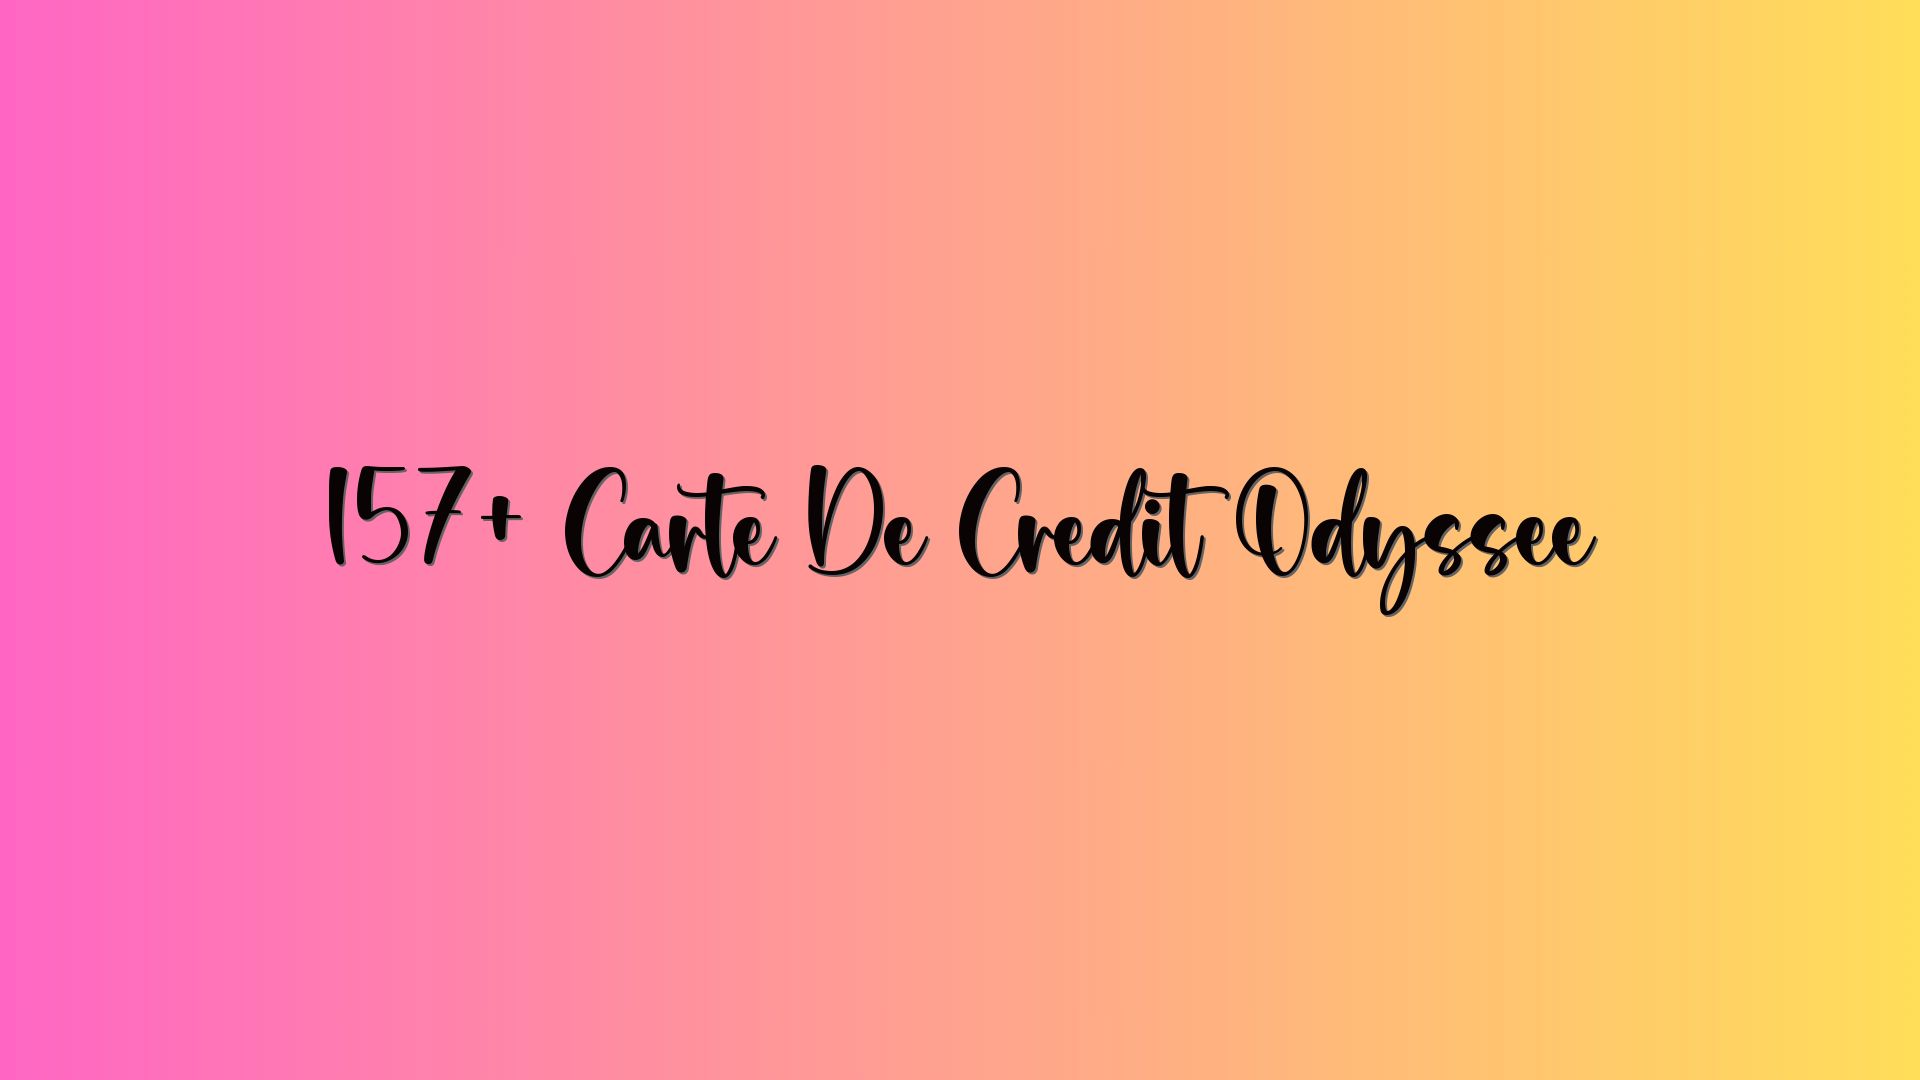 157+ Carte De Credit Odyssée